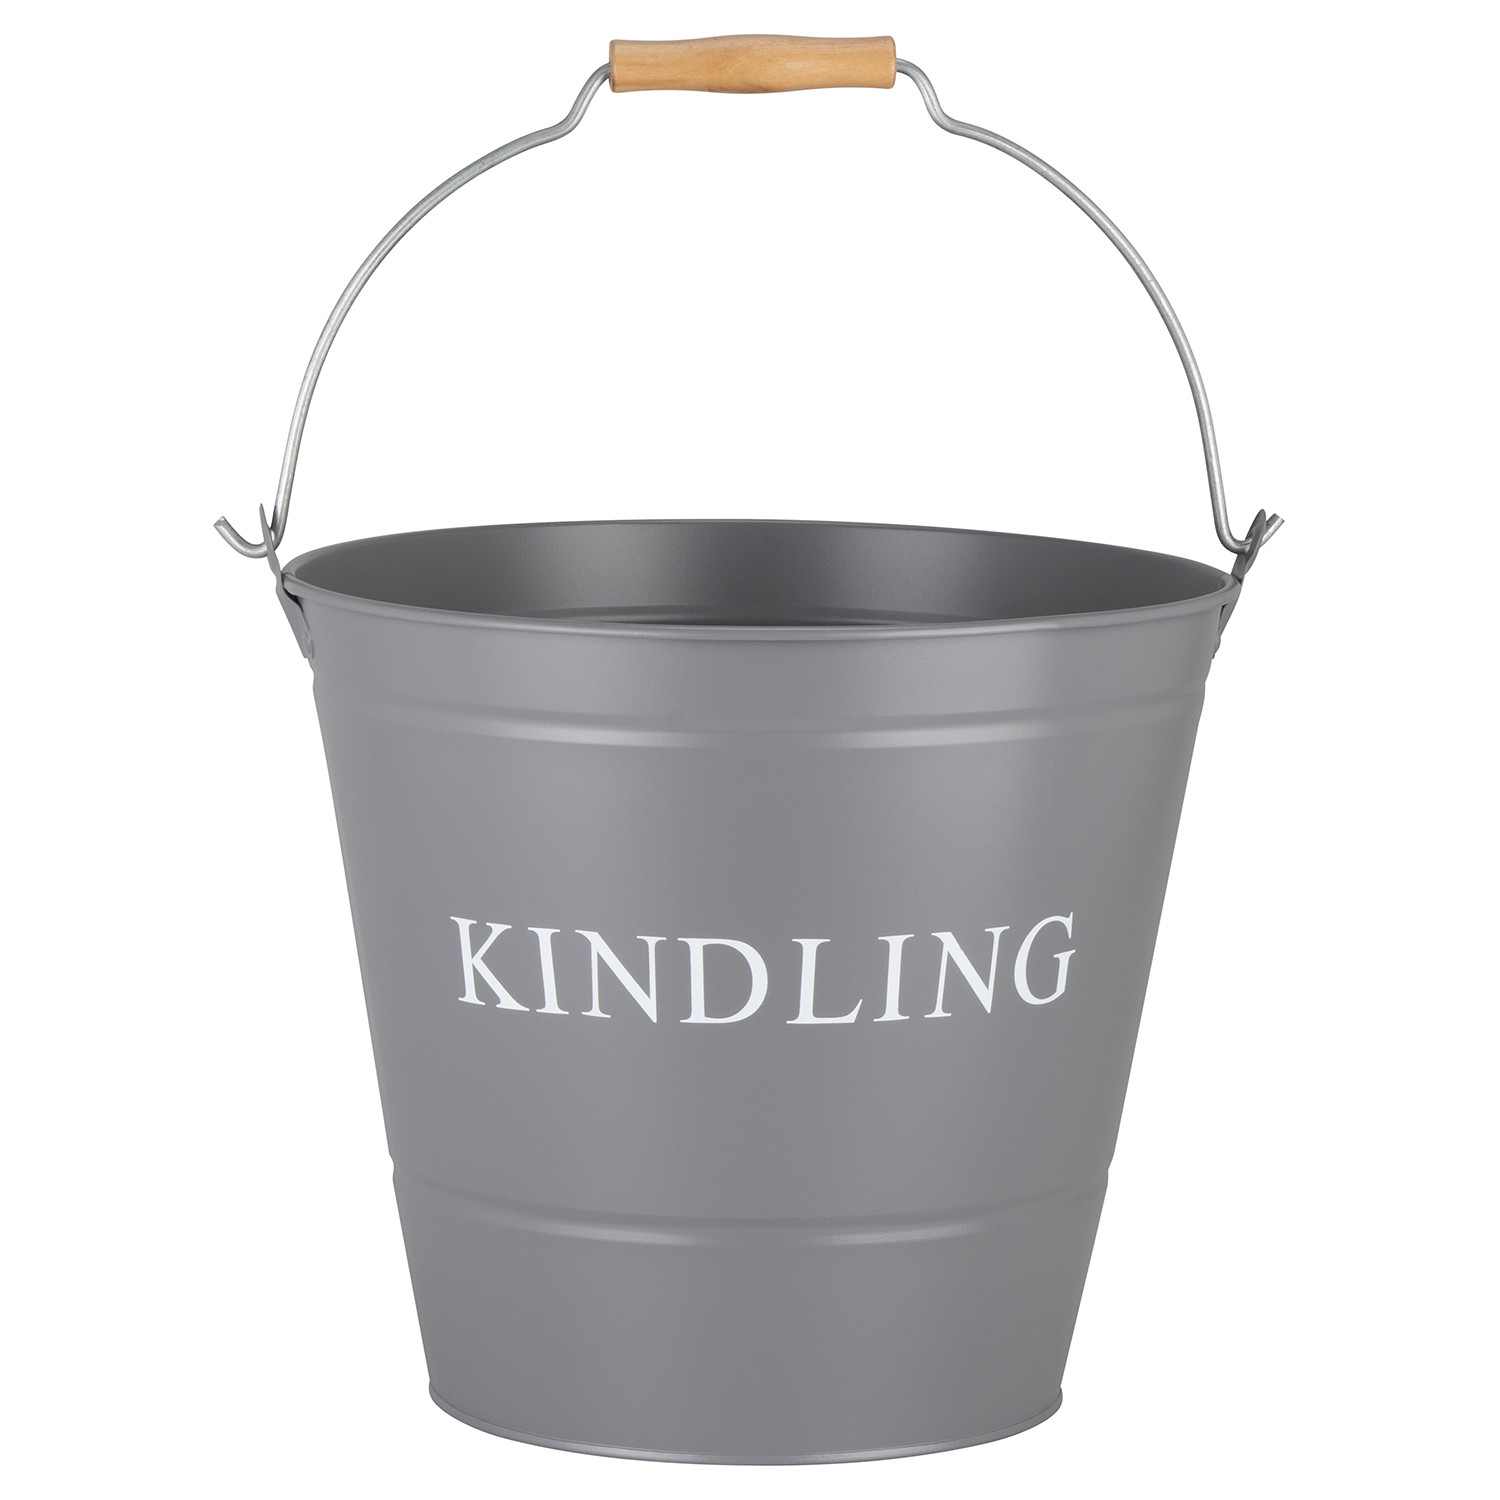 Kinding Bucket  - Grey Image